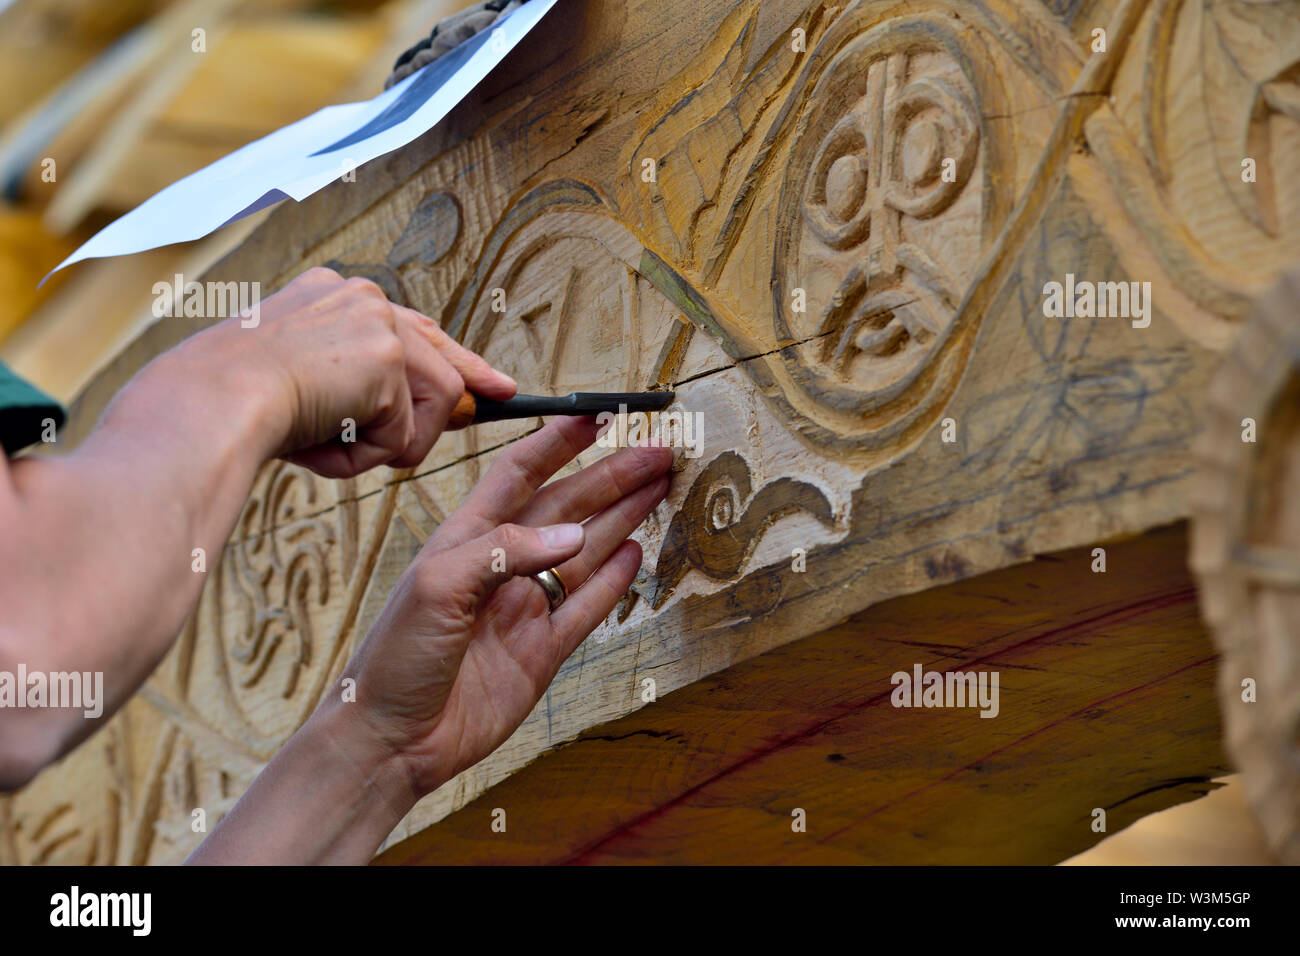 Motivo tallado en roble tradicional haz sobre reconstrucción de entramado de madera medievales hall Foto de stock